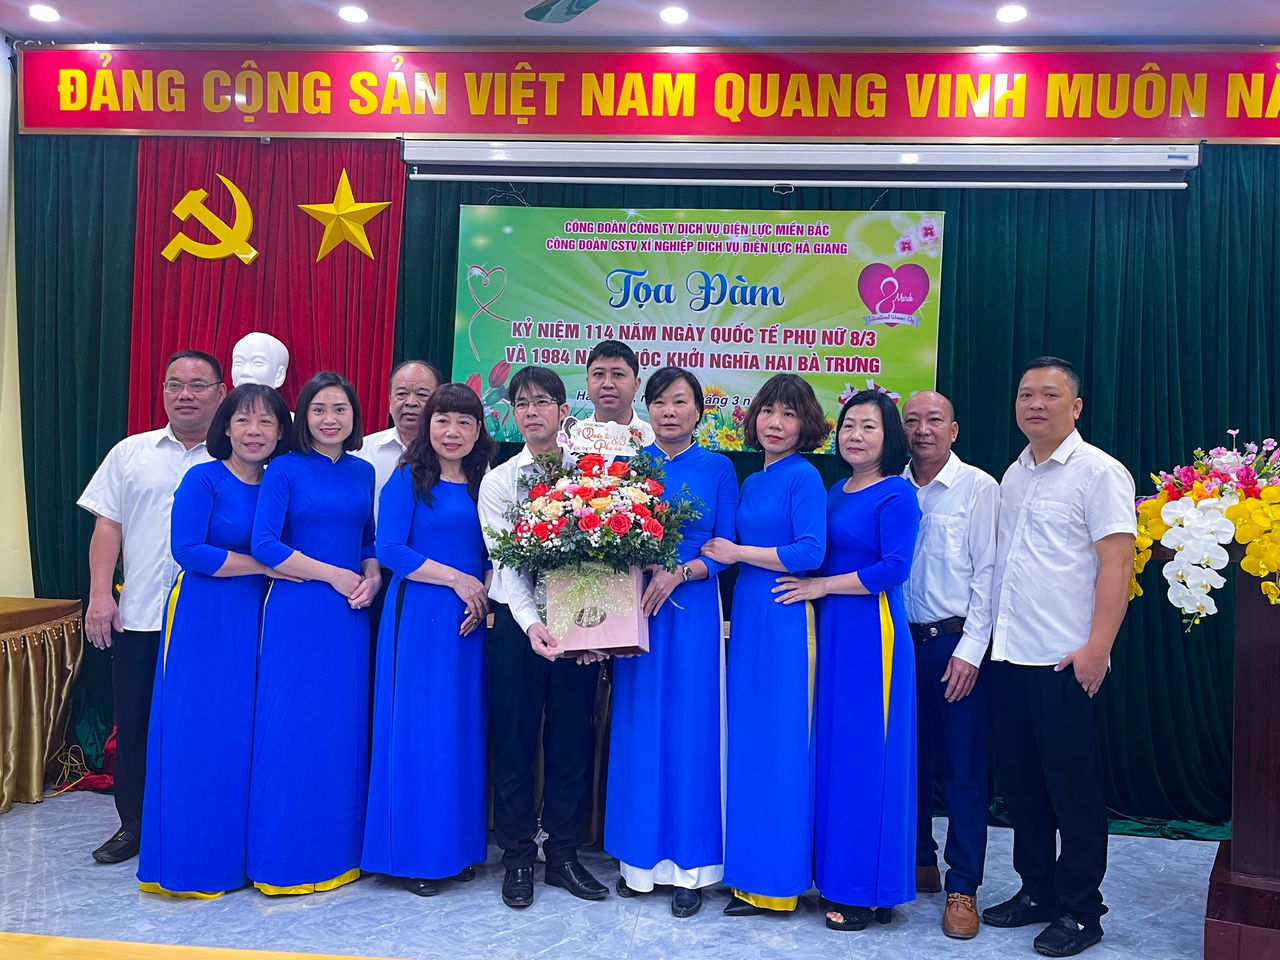 Xí nghiệp Dịch vụ Điện lực Hà Giang tổ chức các hoạt động ý nghĩa kỷ niệm Ngày Quốc tế Phụ nữ